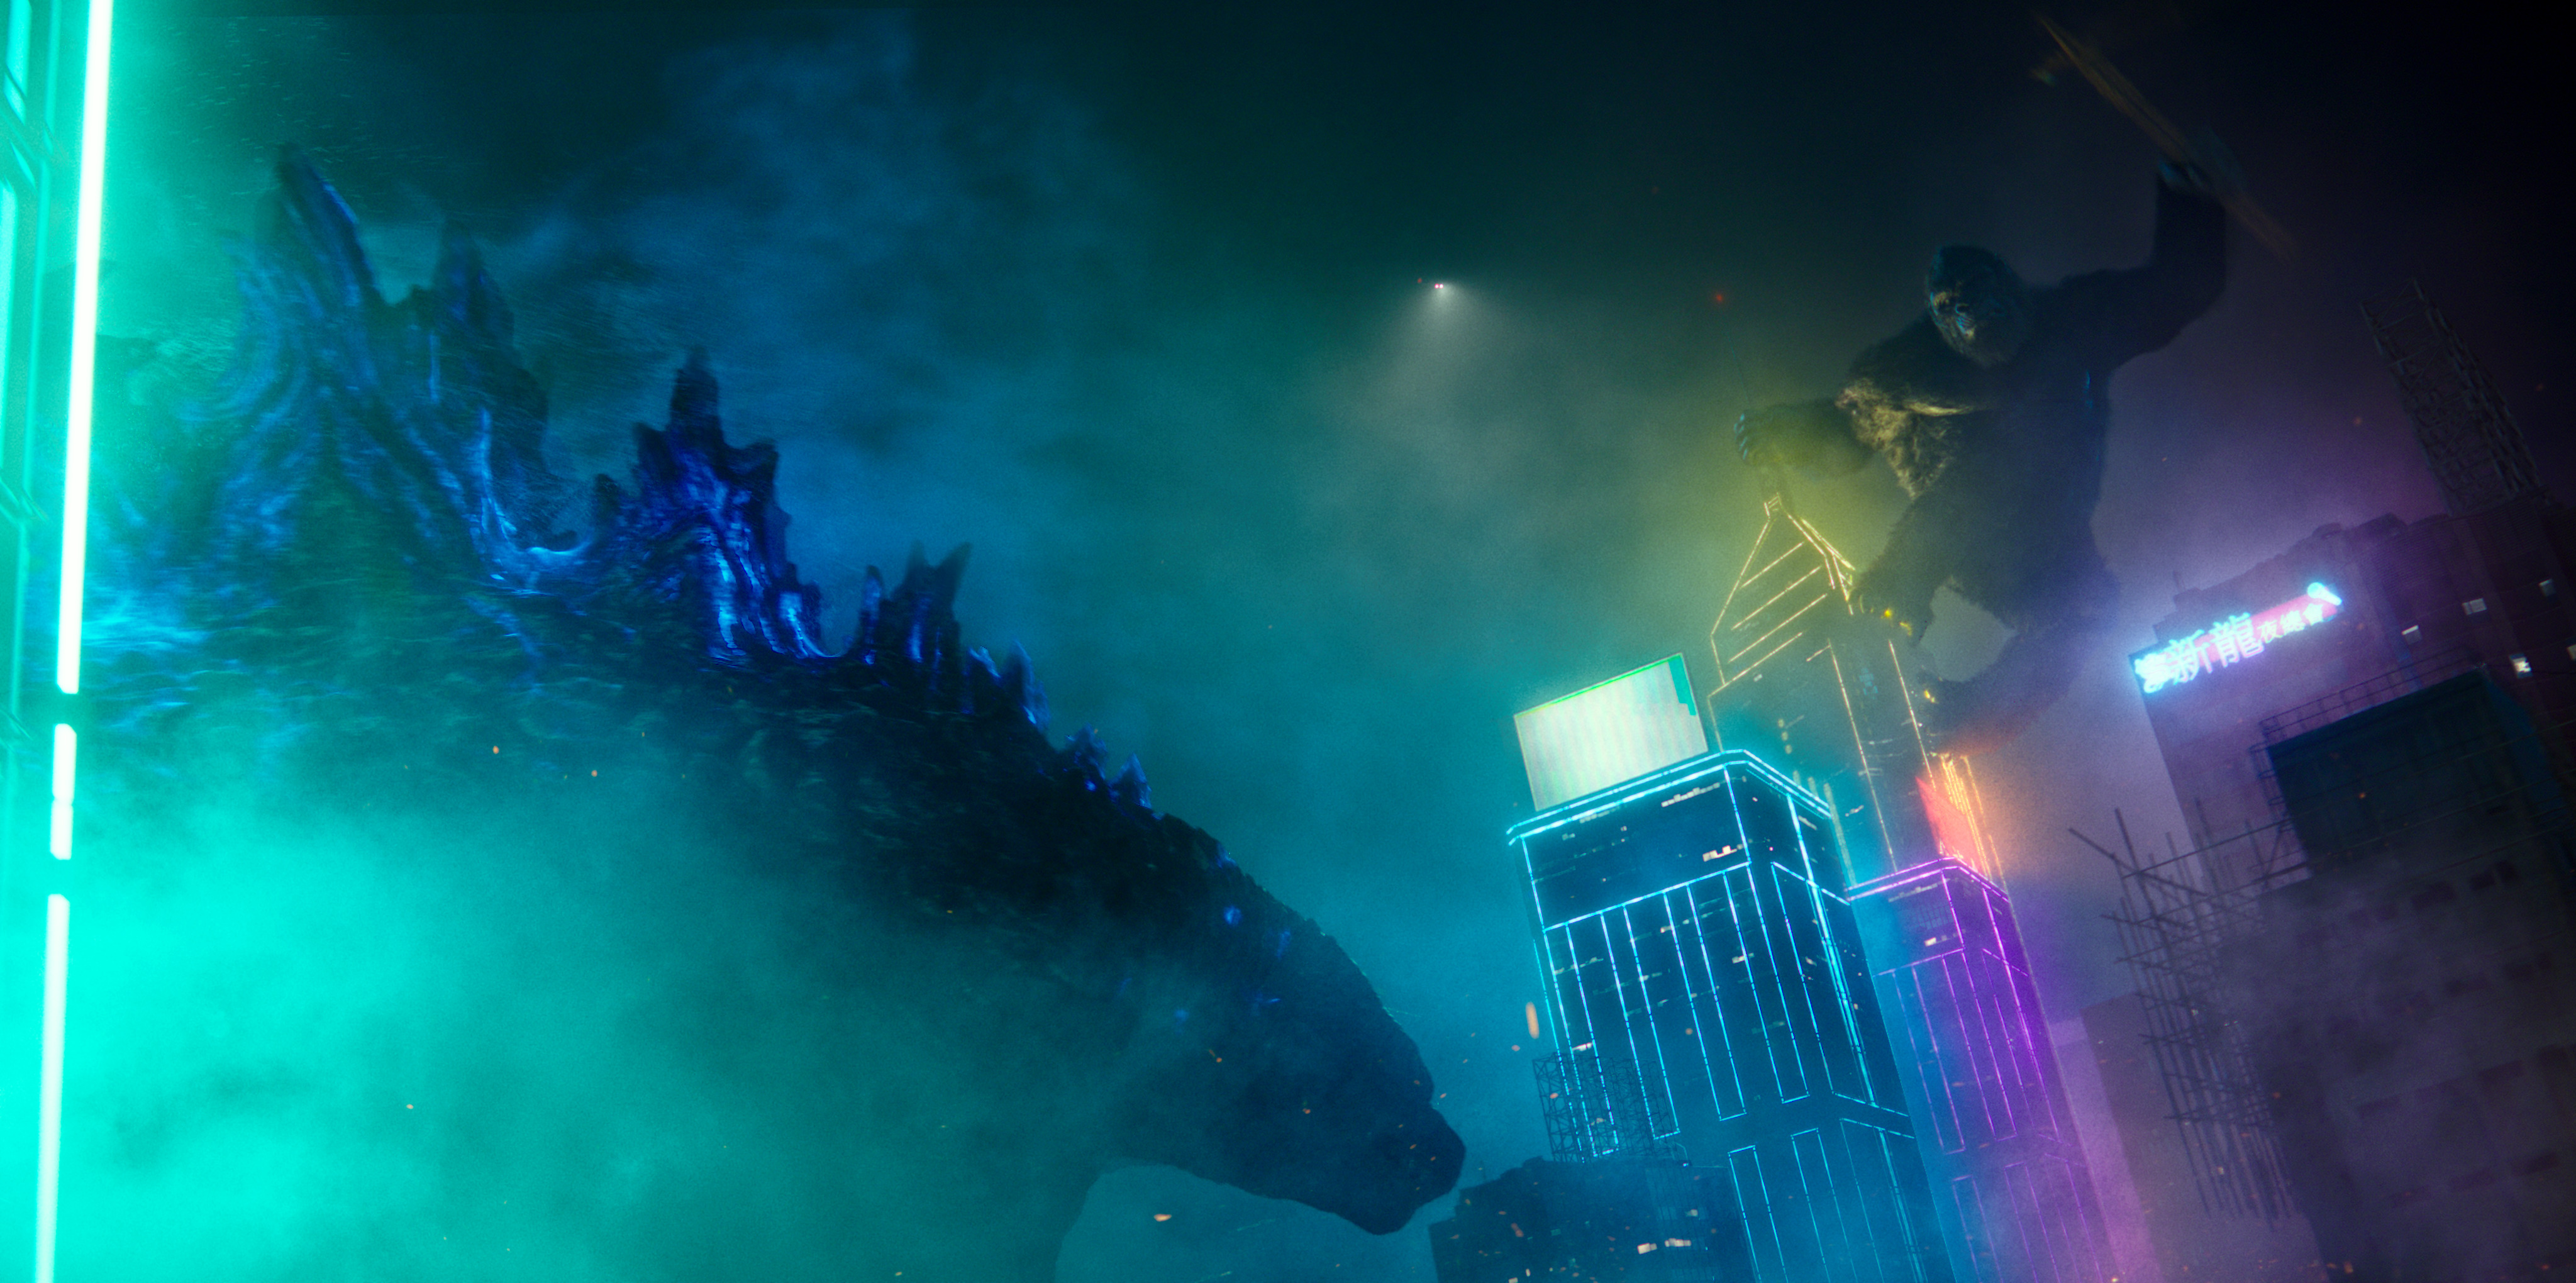 King Kong vs. Godzilla in Hong Kong